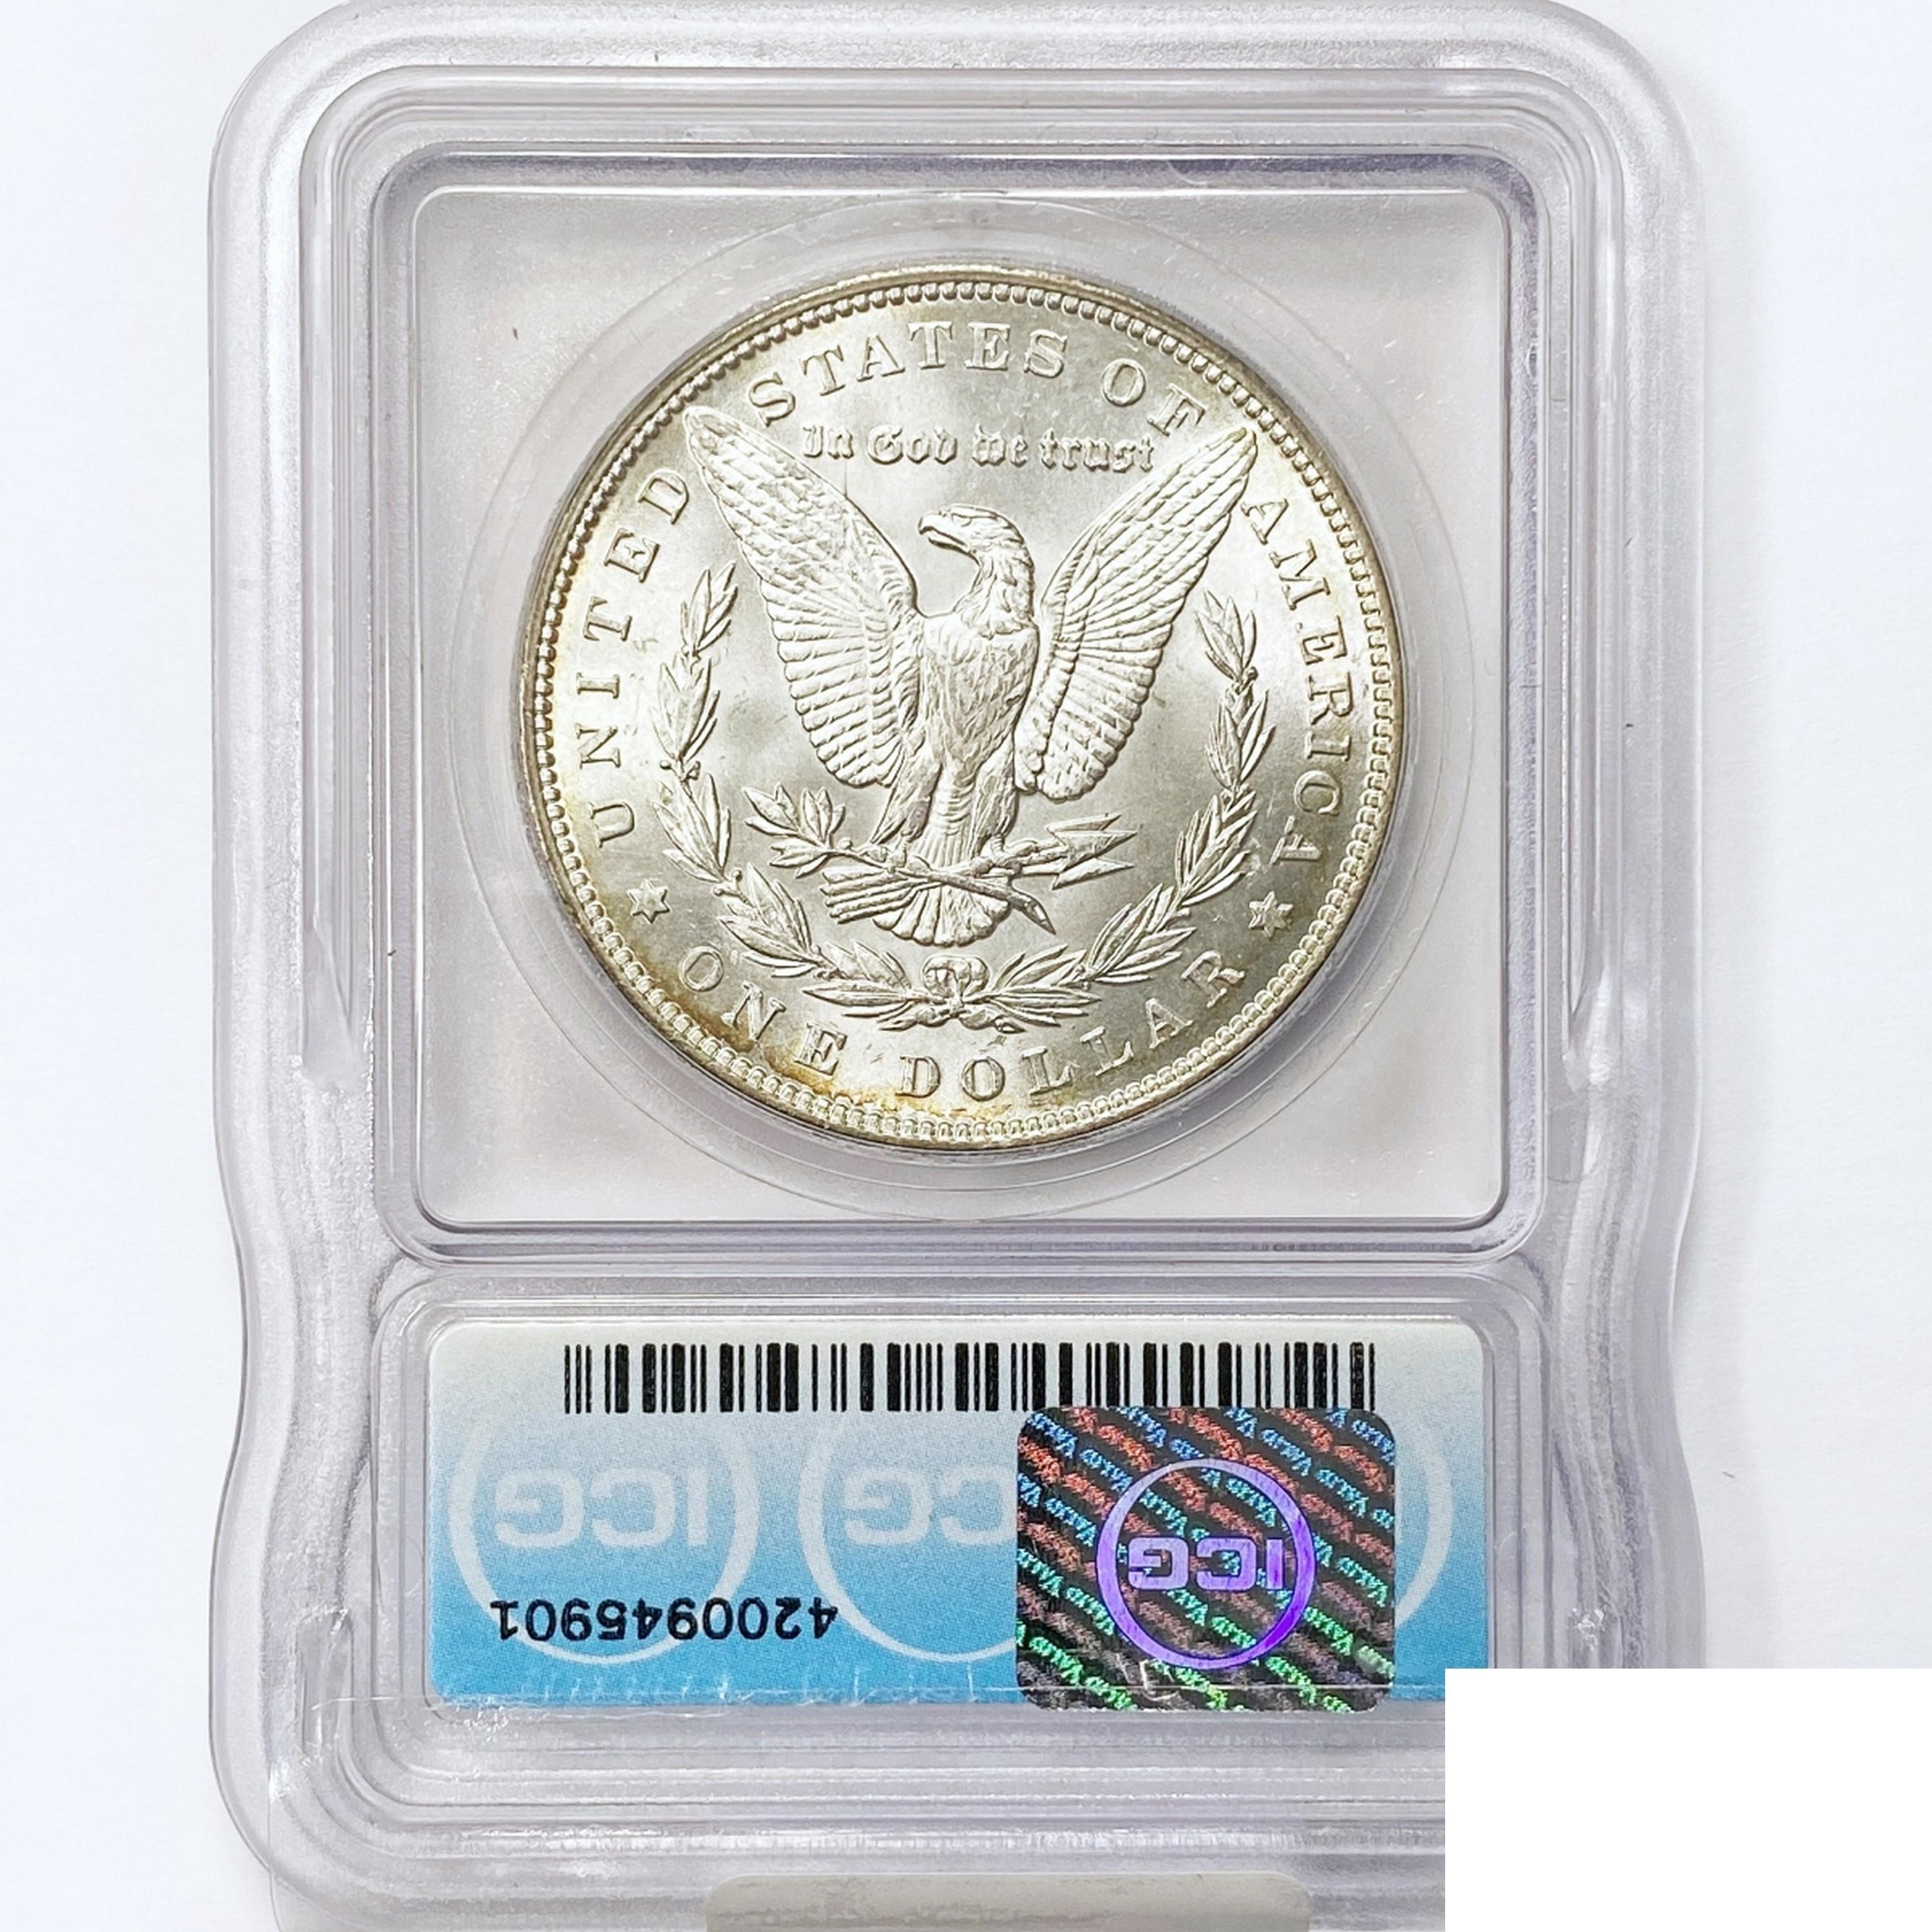 1892 Morgan Silver Dollar ICG MS63